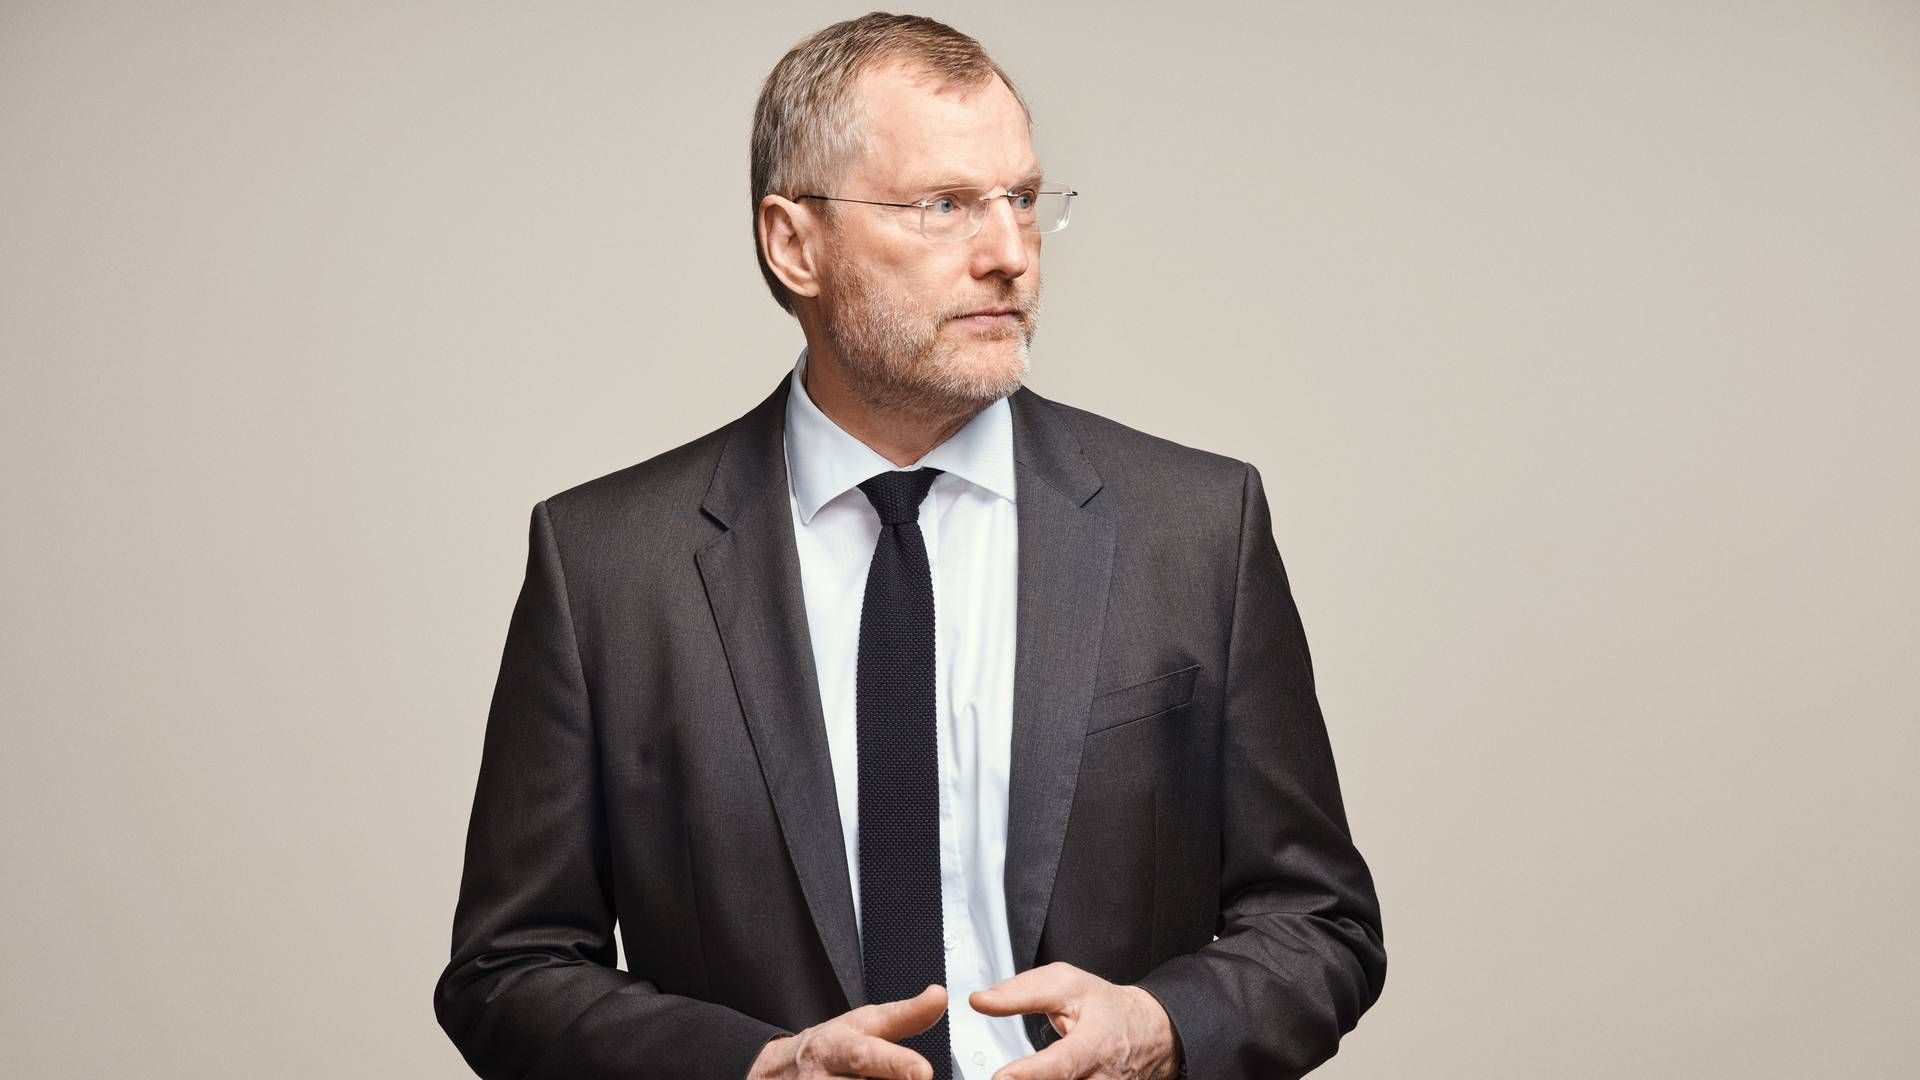 Steen Michael Erichsen er adm. direktør for Velliv. | Foto: PR/Velliv